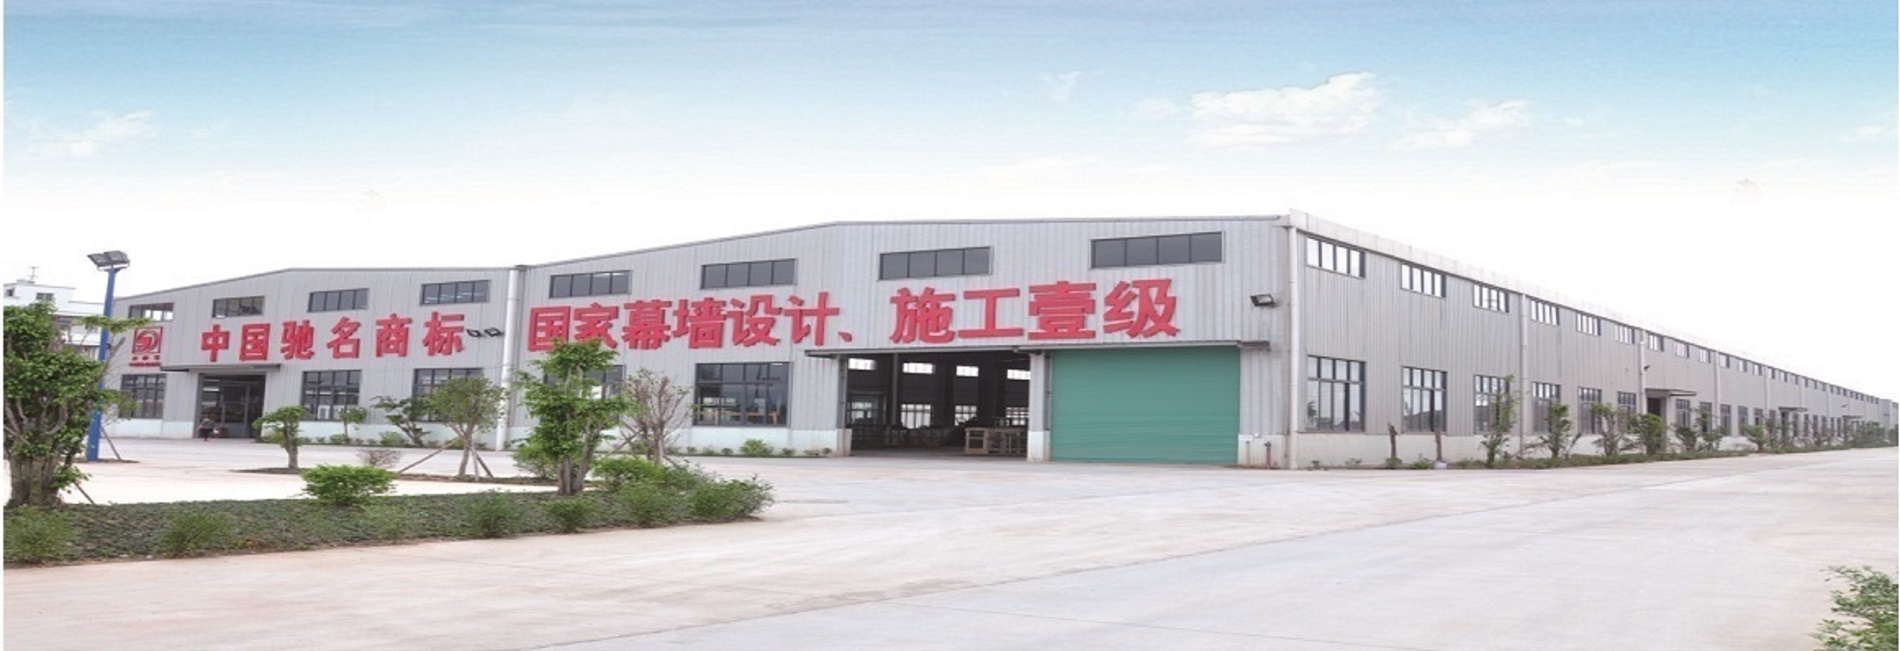 廣東大型鋁型材生產加工企業